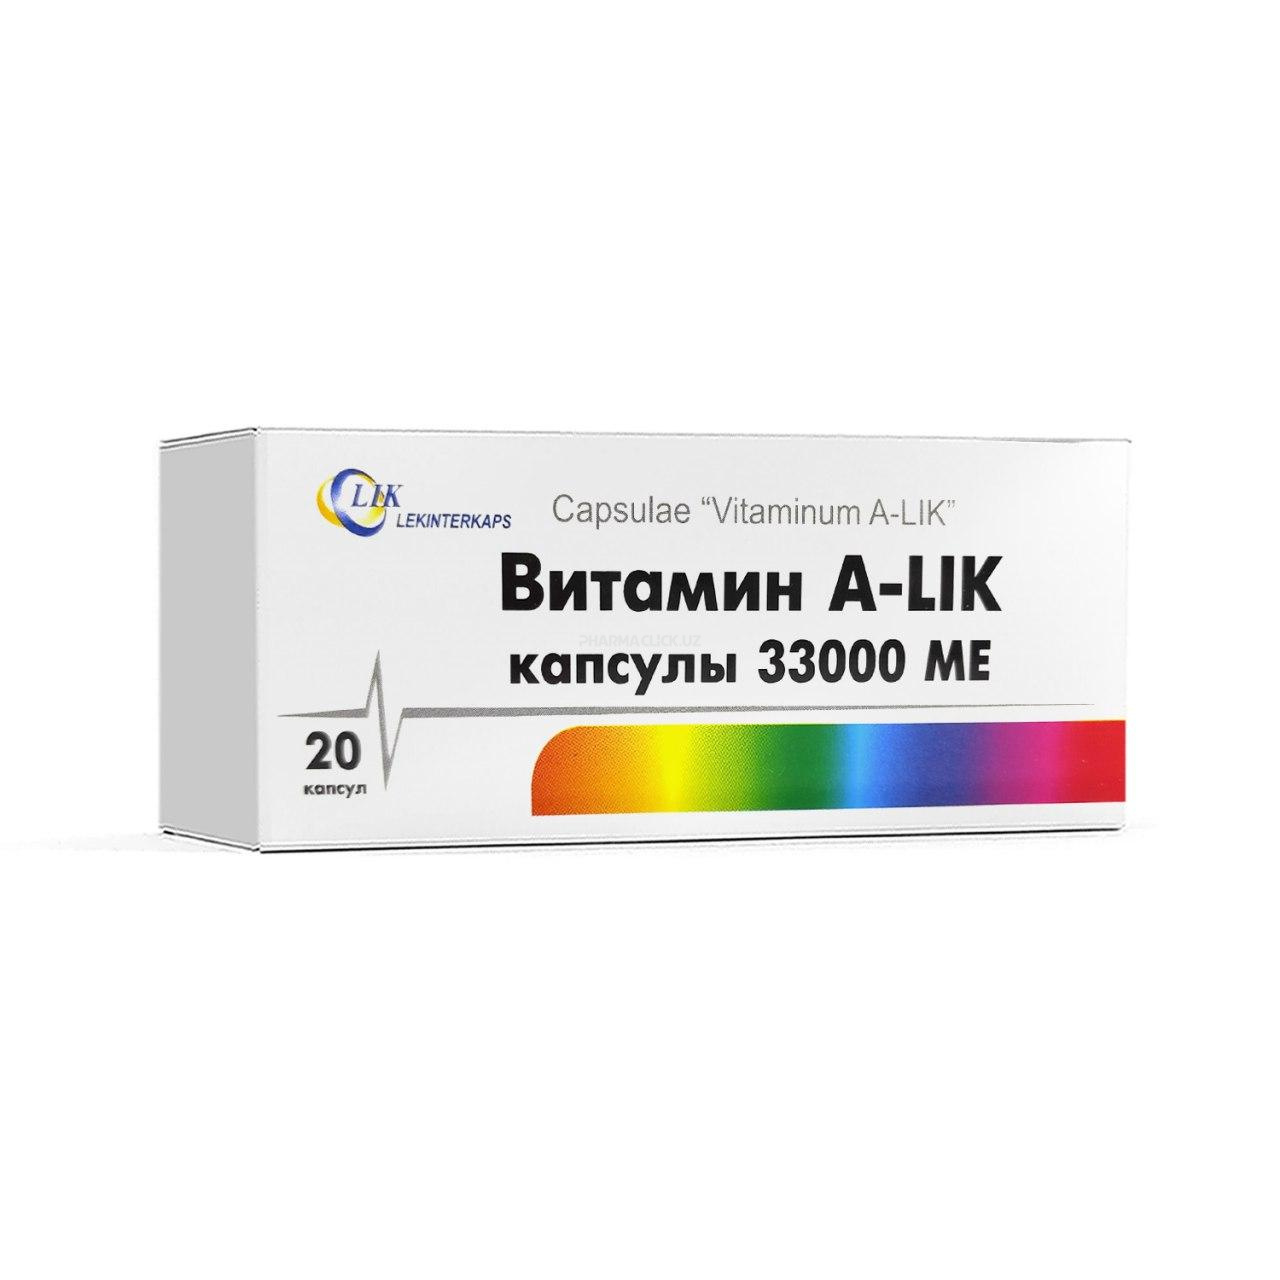 Витамин А "LIK" 33000МЕ №20